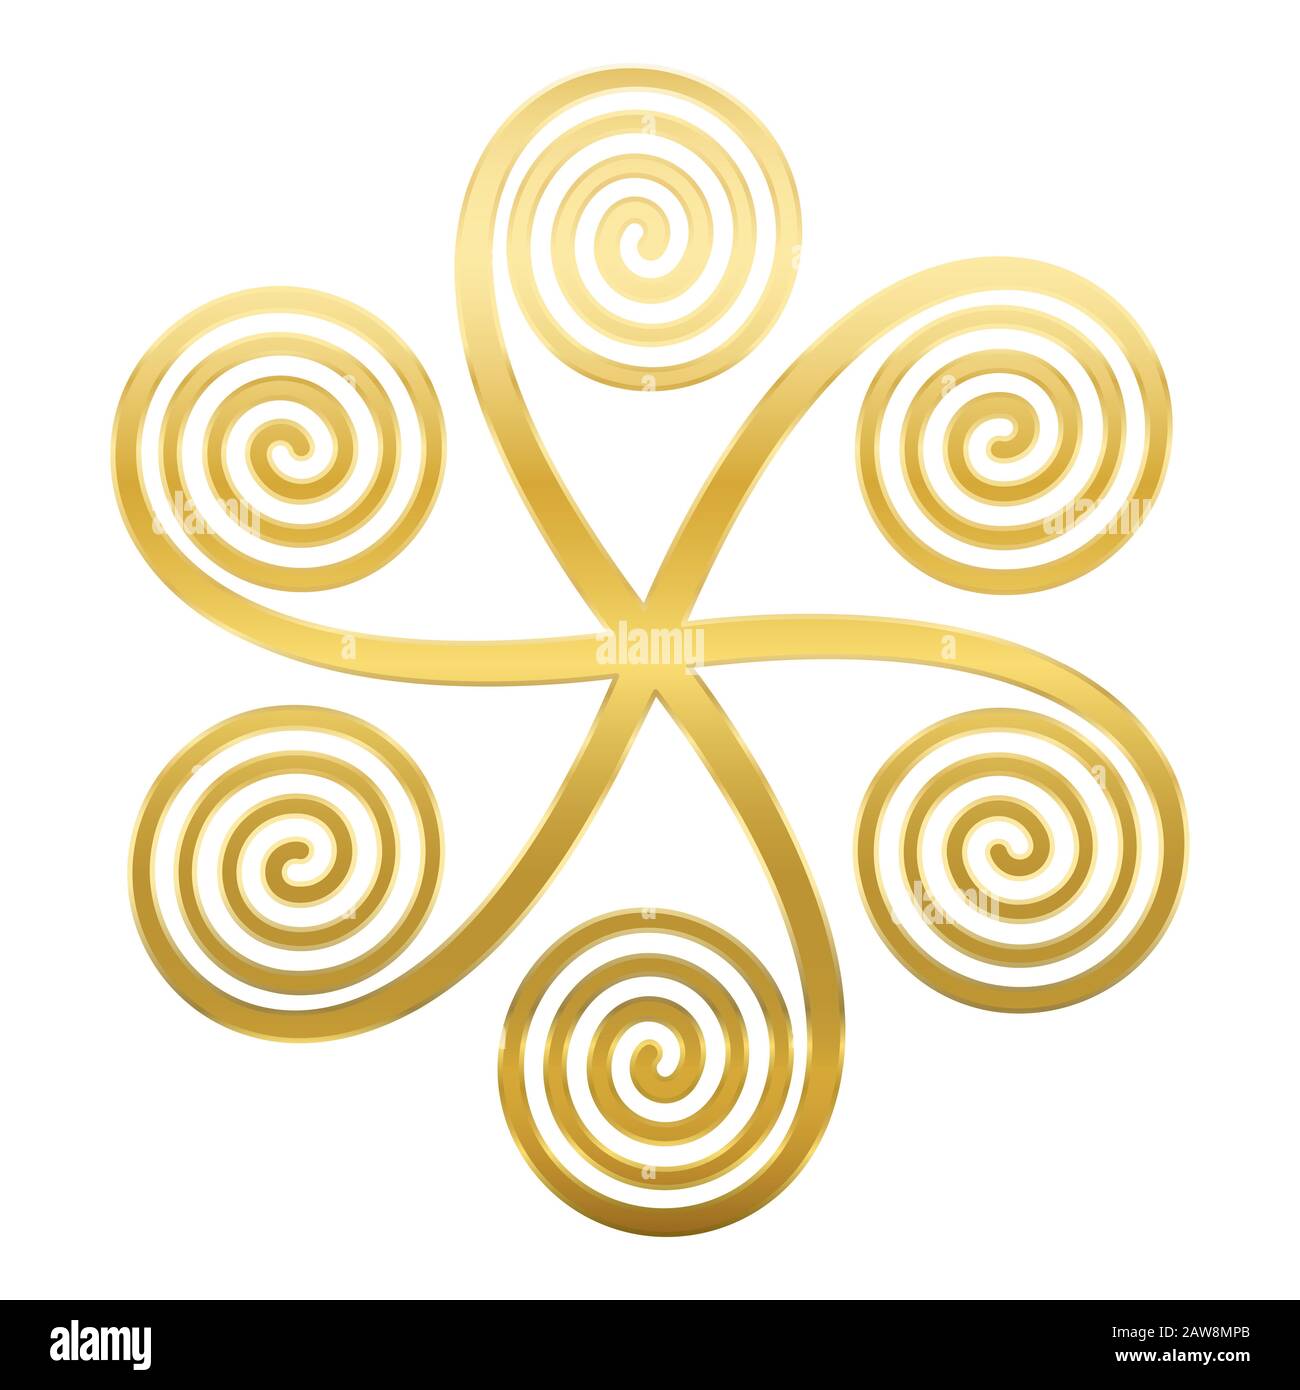 Symbole en forme d'étoile dorée avec six spirales arithmétiques linéaires, en spirales Archimediennes, connectées au centre, semblant tourner dans le sens horaire. Banque D'Images